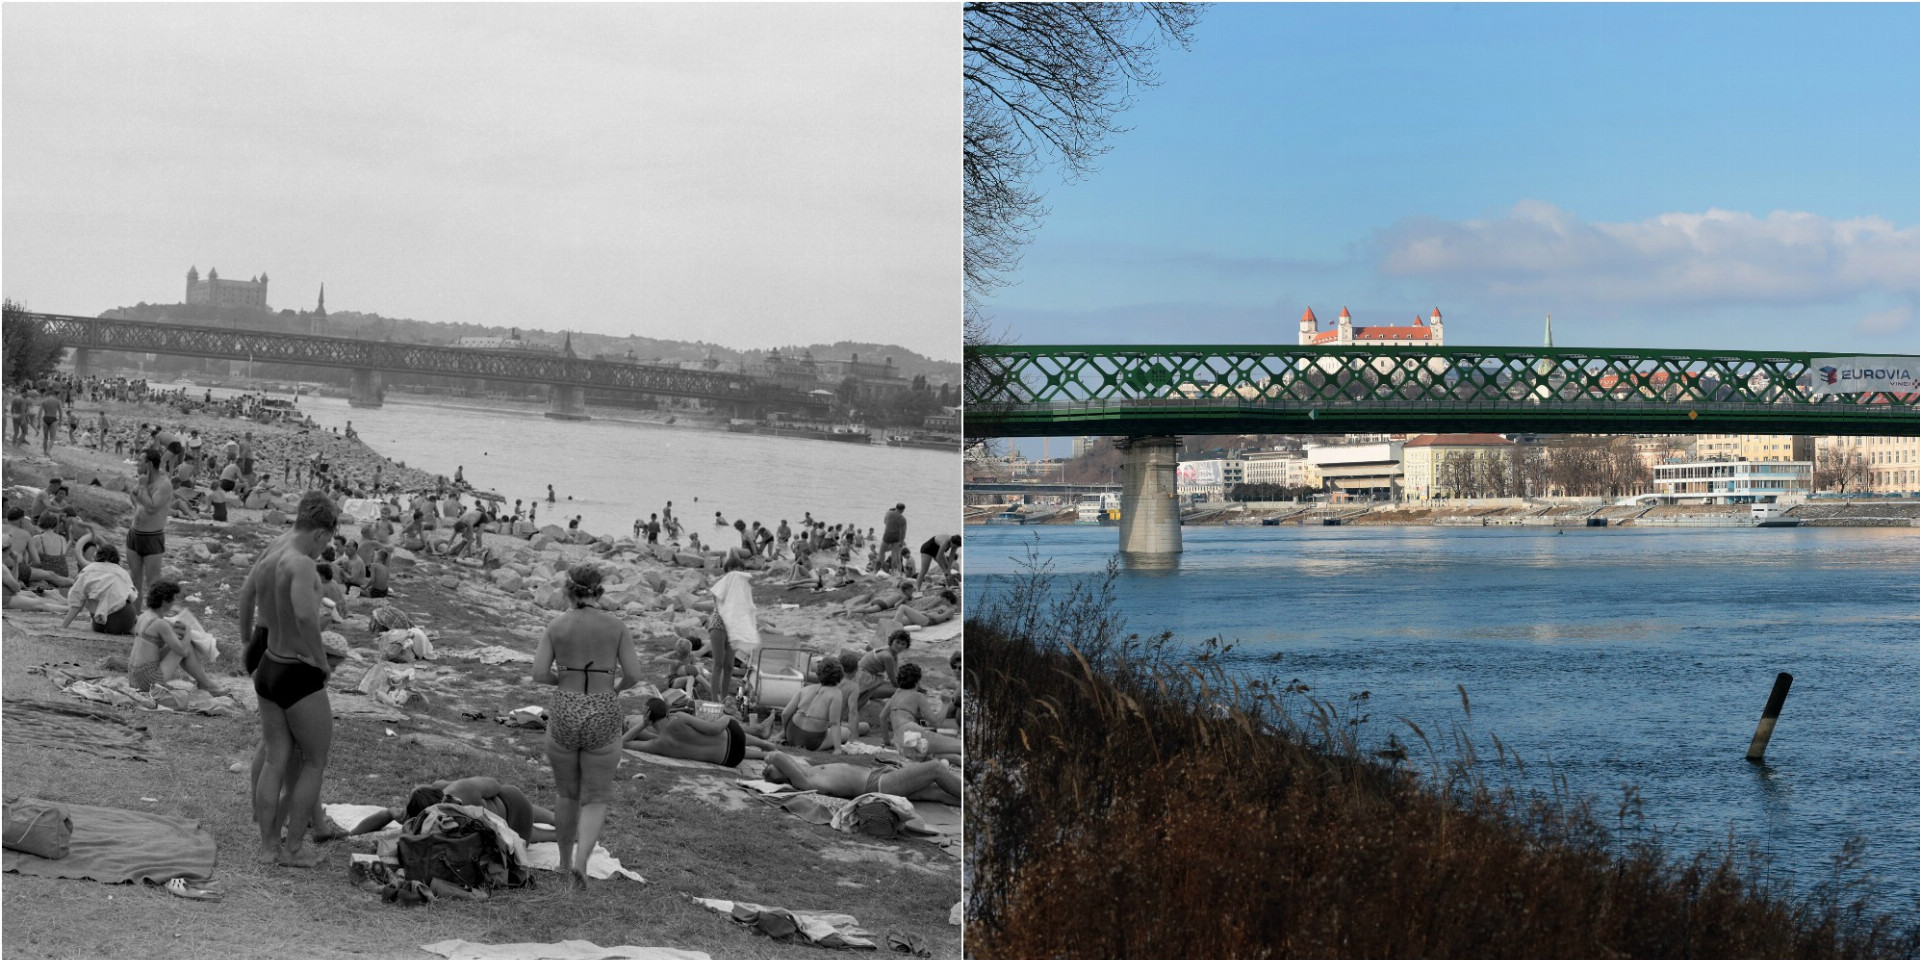 Prvým verejným kúpaliskom v Bratislave bolo Lido, ktoré založili v roku 1928. Pôvodne prírodné kúpalisko sa rozprestieralo na petržalskom brehu Dunaja, oproti niekdajšiemu nákladnému prístavu. Spočiatku bolo Lido iba upraveným štrkovým brehom Dunaja s niekoľkými ukotvenými pontónmi a malým dreveným bazénom, v ktorom cez bočné mreže voľne pretekala riečna voda. Časom štrkový breh upravili, postavili ďalší, väčší bazén a pribudli tiež jednoduché plátenné kabínky na prezliekanie. Takto vylepšené Lido otvorili v roku 1934. Rok nato vznikol v areáli kúpaliska požiar, avšak rýchlo sa ho podarilo obnoviť na kúpalisko so všetkým čo k nemu patrí. Kúpajúci Bratislavčania využívali dva betónové bazény obklopené murovanými tribúnami na ležanie či sedenie, dosky na skákanie aj šmykľavku. Samozrejmosťou boli sprchy, pohodlné ležadlá aj kabínky so skrinkami.
Návštevníkom Lida bolo k dispozícii tiež volejbalové ihrisko a pingpongové stoly, deti sa zase rady hrali na obľúbenom veľkom pieskovisku. Okolie trávnatého areálu malo udržiavaný parkový vzhľad, ktorého súčasťou boli betónové chodníky. V dreveným pavilónoch ponúkali kúpaliskové dobroty ako napríklad cesnakové rebierka a pečené klobásky, bratislavské rohlíčky, balkánsku zmrzlinu a samozrejme pivo alebo grenadinové striky. Voda v bazénoch bola ľadová, rovnako ako voda v Dunaji, v ktorom sa dalo plávať tiež. Lido bolo iba sezónne letné kúpalisko, za vstup sa muselo platiť, no napriek tomu to bolo mimoriadne obľúbené a navštevované miesto. V roku 1938 počas okupácie Petržalky bol k Nemecku pričlenený aj pravý breh Dunaja, a tak Bratislava stratila svoje kúpalisko. V roku 1944 bolo Lido poškodené počas bombardovania Američanmi, ale aj dlhé roky po vojne sem mnohí Bratislavčania radi chodili. Kúpalisko slúžilo verejnosti ešte začiatkom 80. rokov minulého storočia. V 90. rokoch sa objavili plány na rekonštrukciu Lida, ktoré malo byť súčasťou veľkého rekreačno-zábavného areálu, ale projekt sa napokon nezrealizoval.